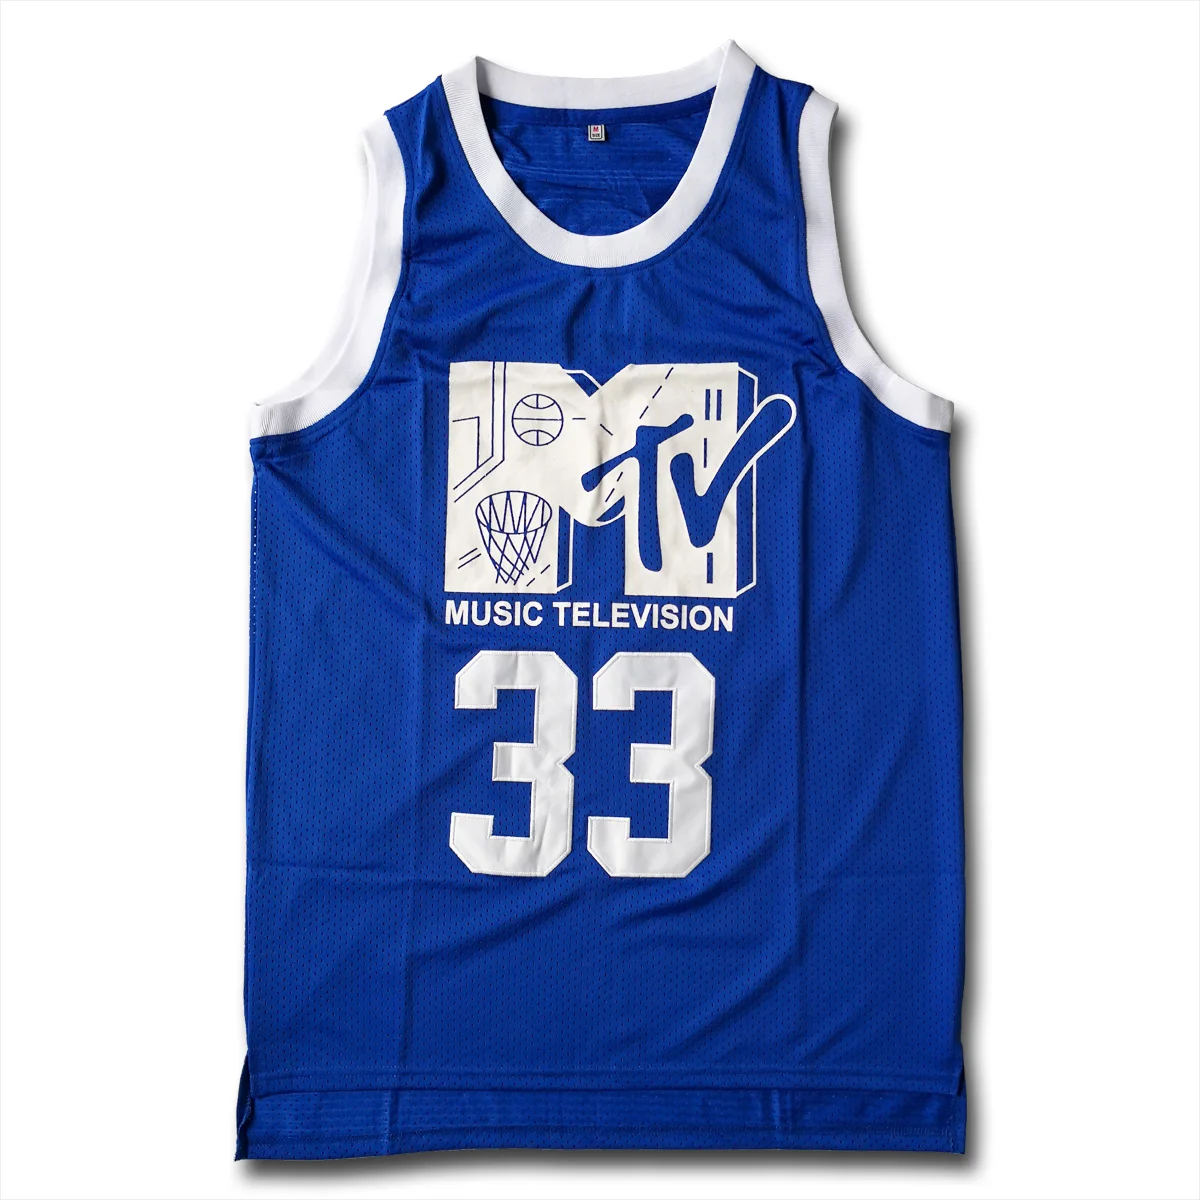 

Майка для баскетбола Will Smith #33, первый ежегодный выпуск музыкального телевидения, майка рок N'Jock Jam 1991, голубая майка с вышивкой Уилл Смит, MTV